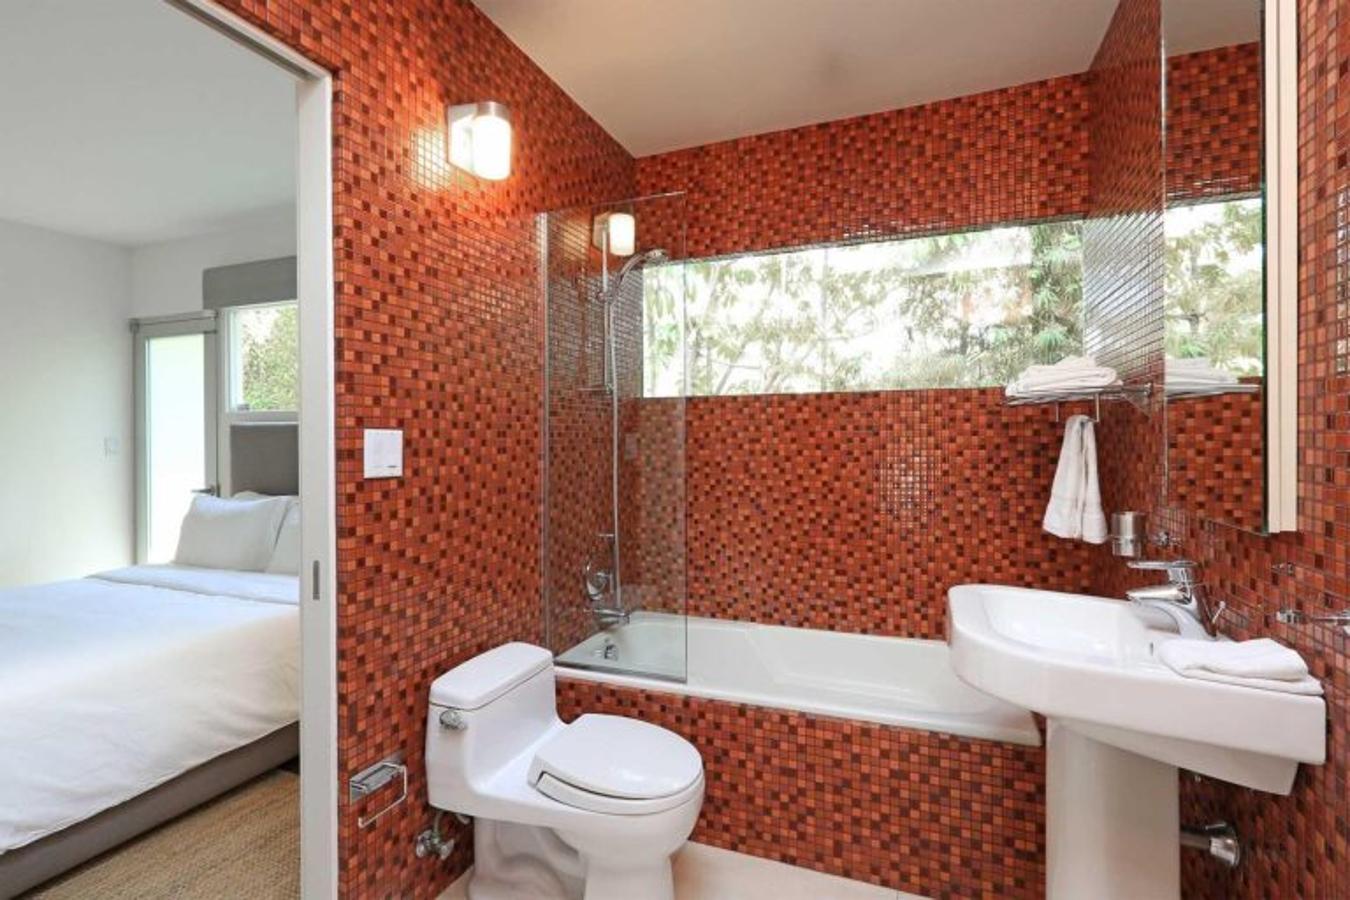 Cuarto de baño. El dormitorio de invitados tiene también cuarto de baño privado. Es sencillo pero funcional, y también está revestido de azulejos, esta vez en rojo